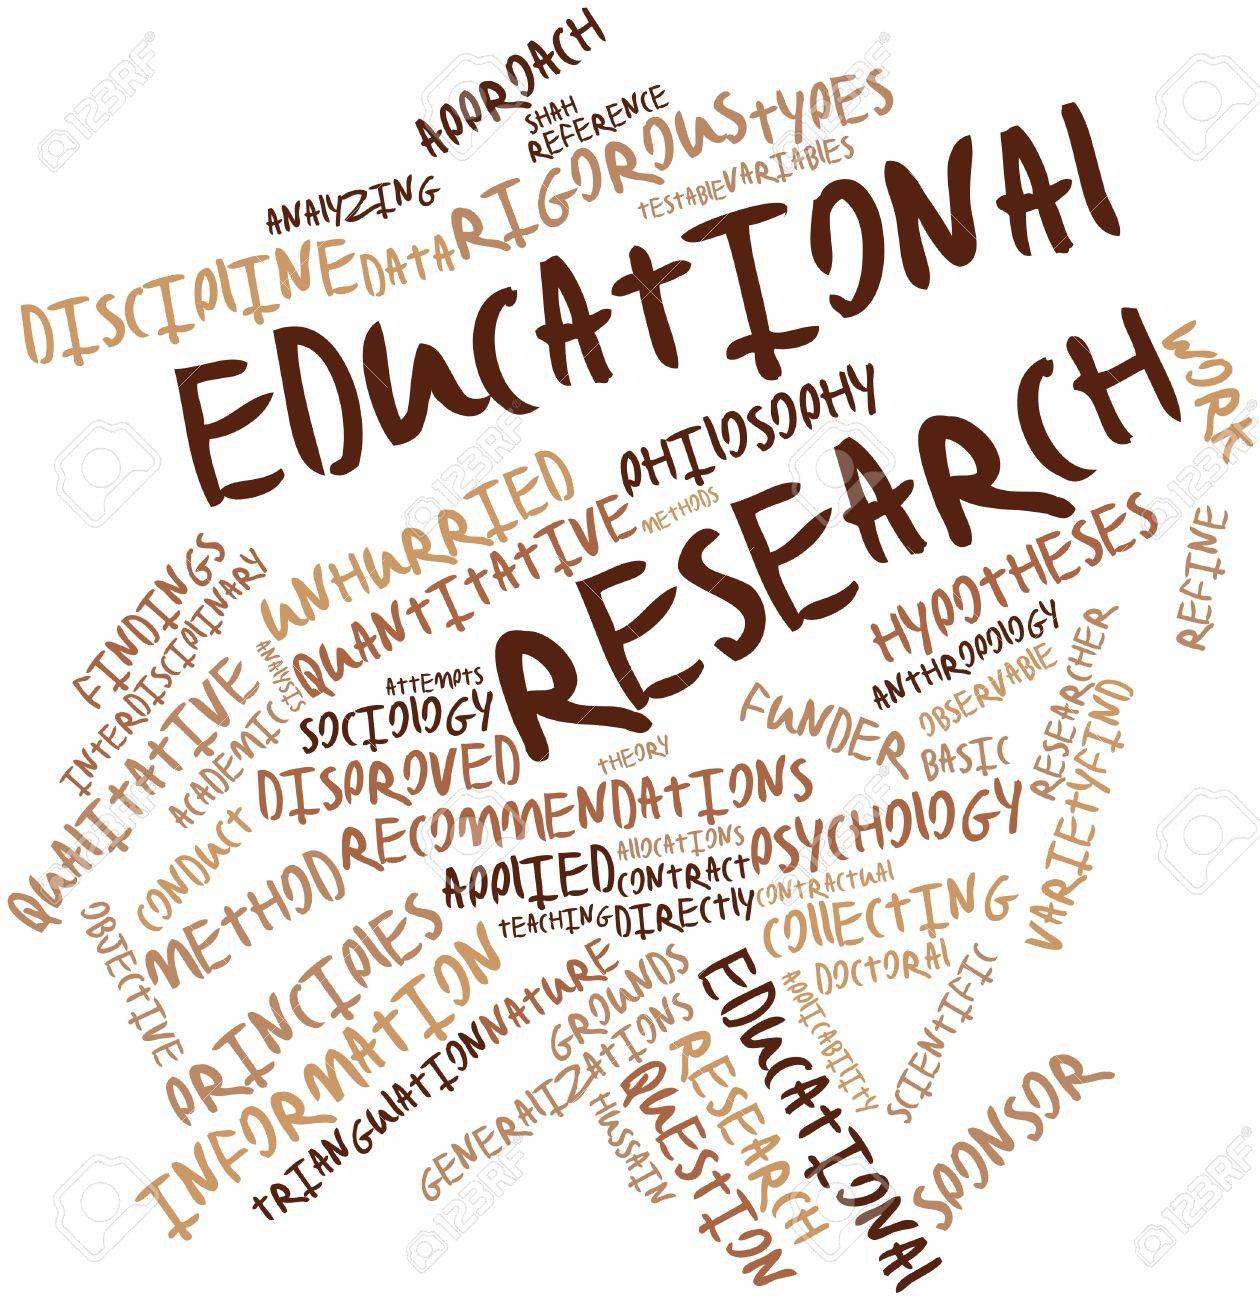 description educational research